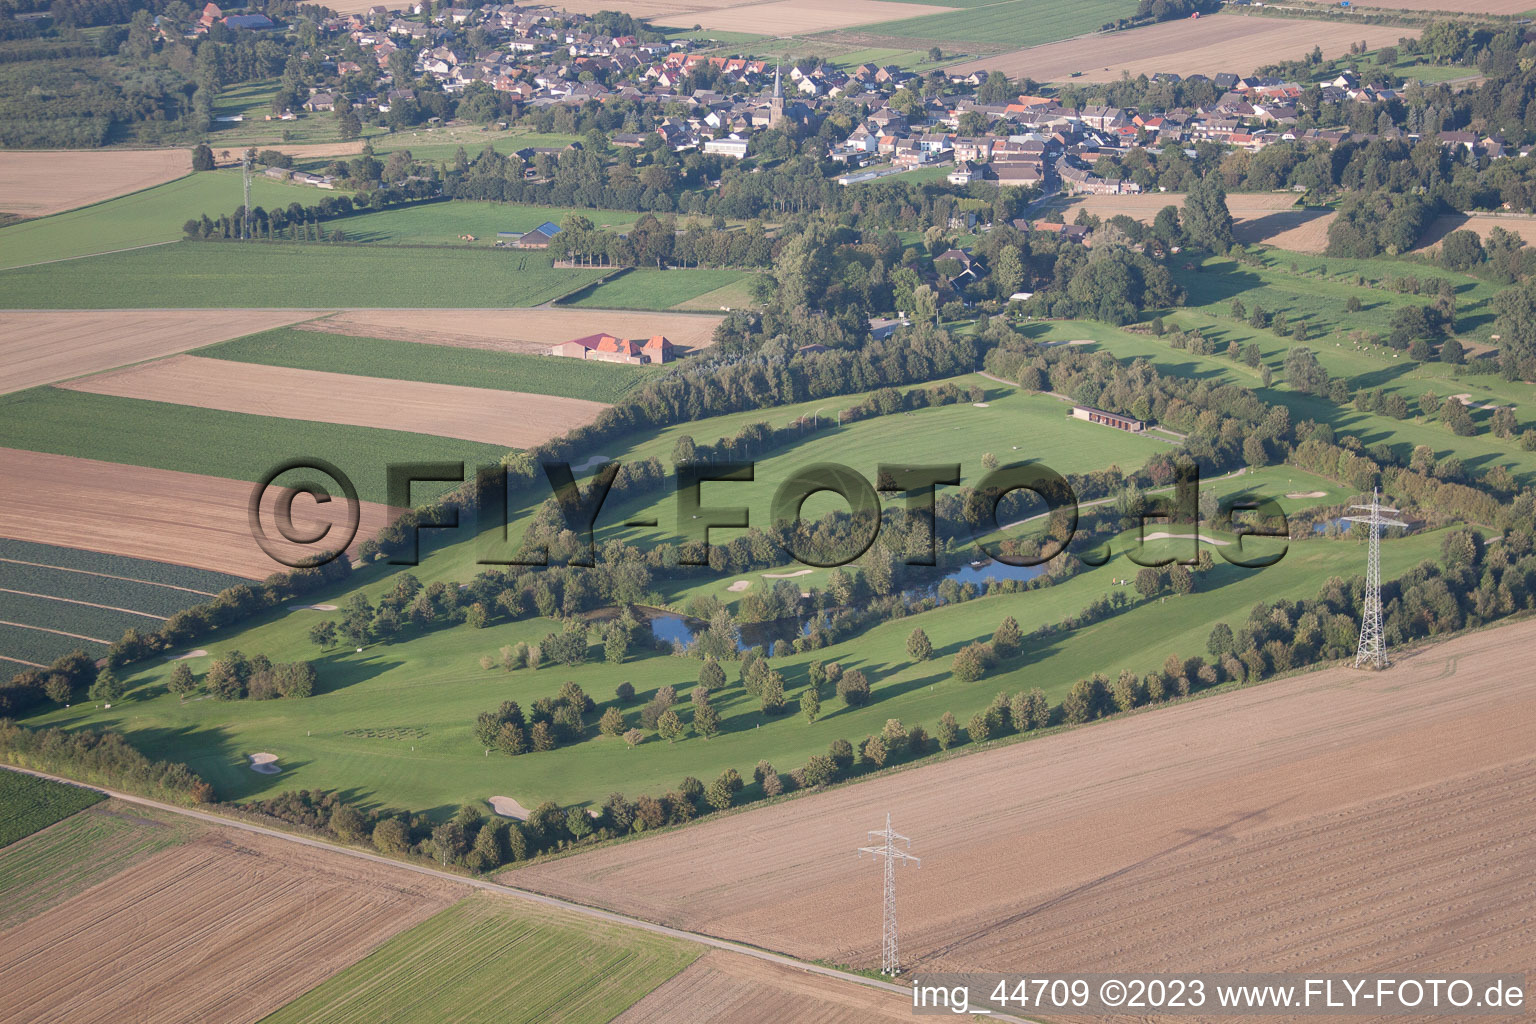 Aerial view of Golf club Mönchengladbach-Wanlo eV in Mönchengladbach in the state North Rhine-Westphalia, Germany